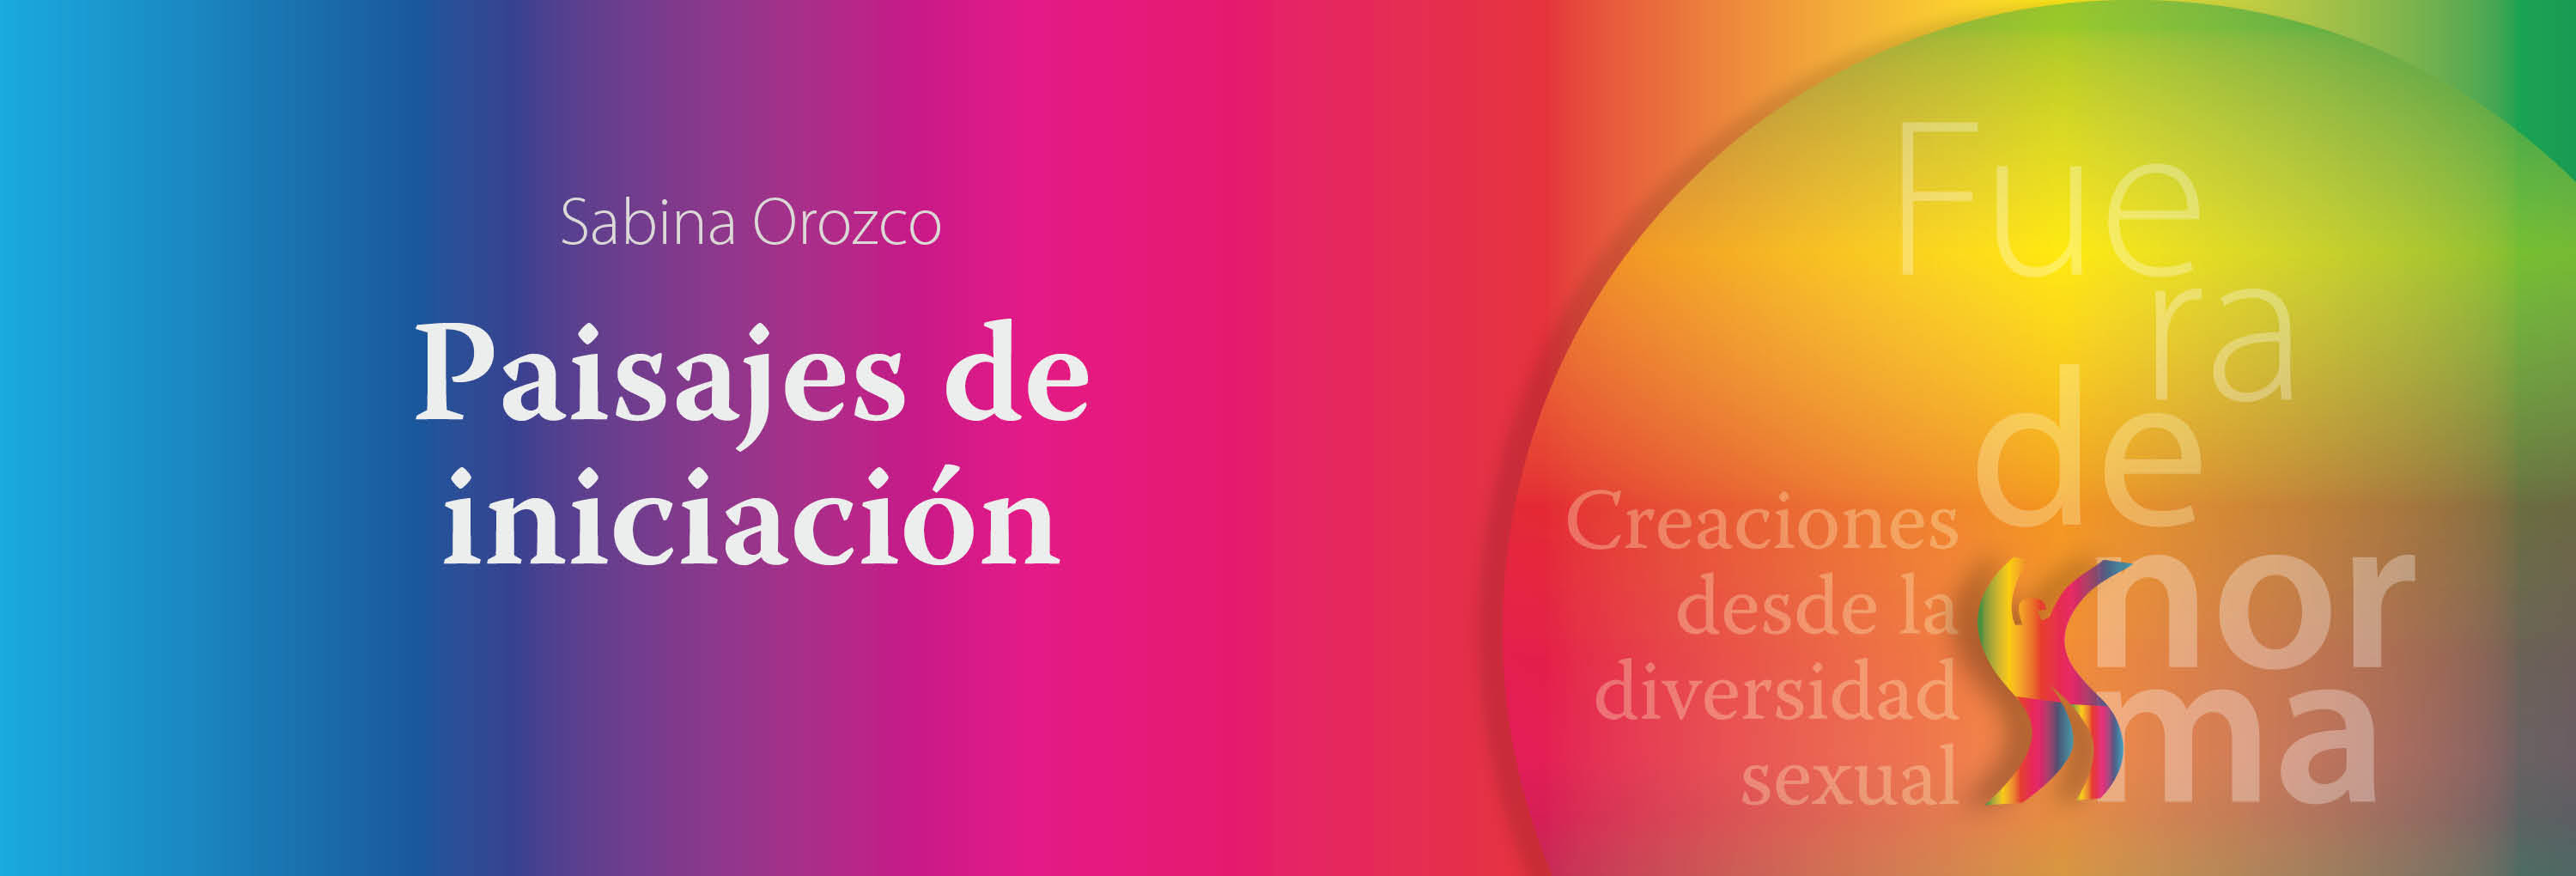 Banner del texto Paisajes de iniciación de Sabina Orozco